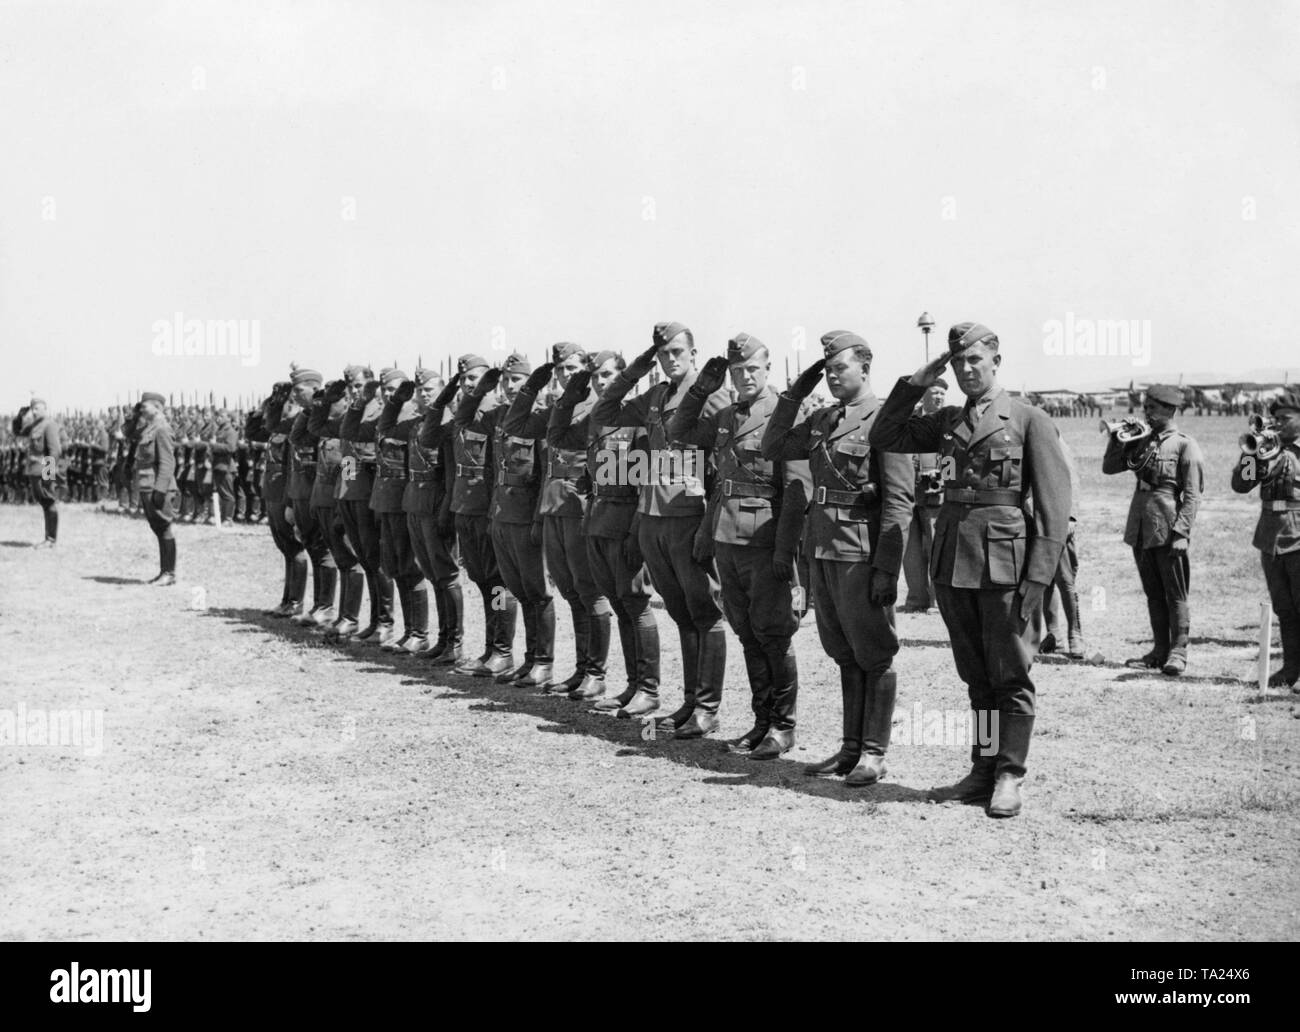 Foto der Deutschen Luftwaffe (Air Force) Offiziere der Legion Condor salutierte die Spanische Caudillo General Francisco Franco während einer Siegesparade anlässlich der Invasion von Madrid Flughafen Barajas, Madrid am 28. März 1939. Andere Soldaten und Spanischen Trompeter haben auch gefüttert. Es sind Flugzeuge im Hintergrund. Stockfoto